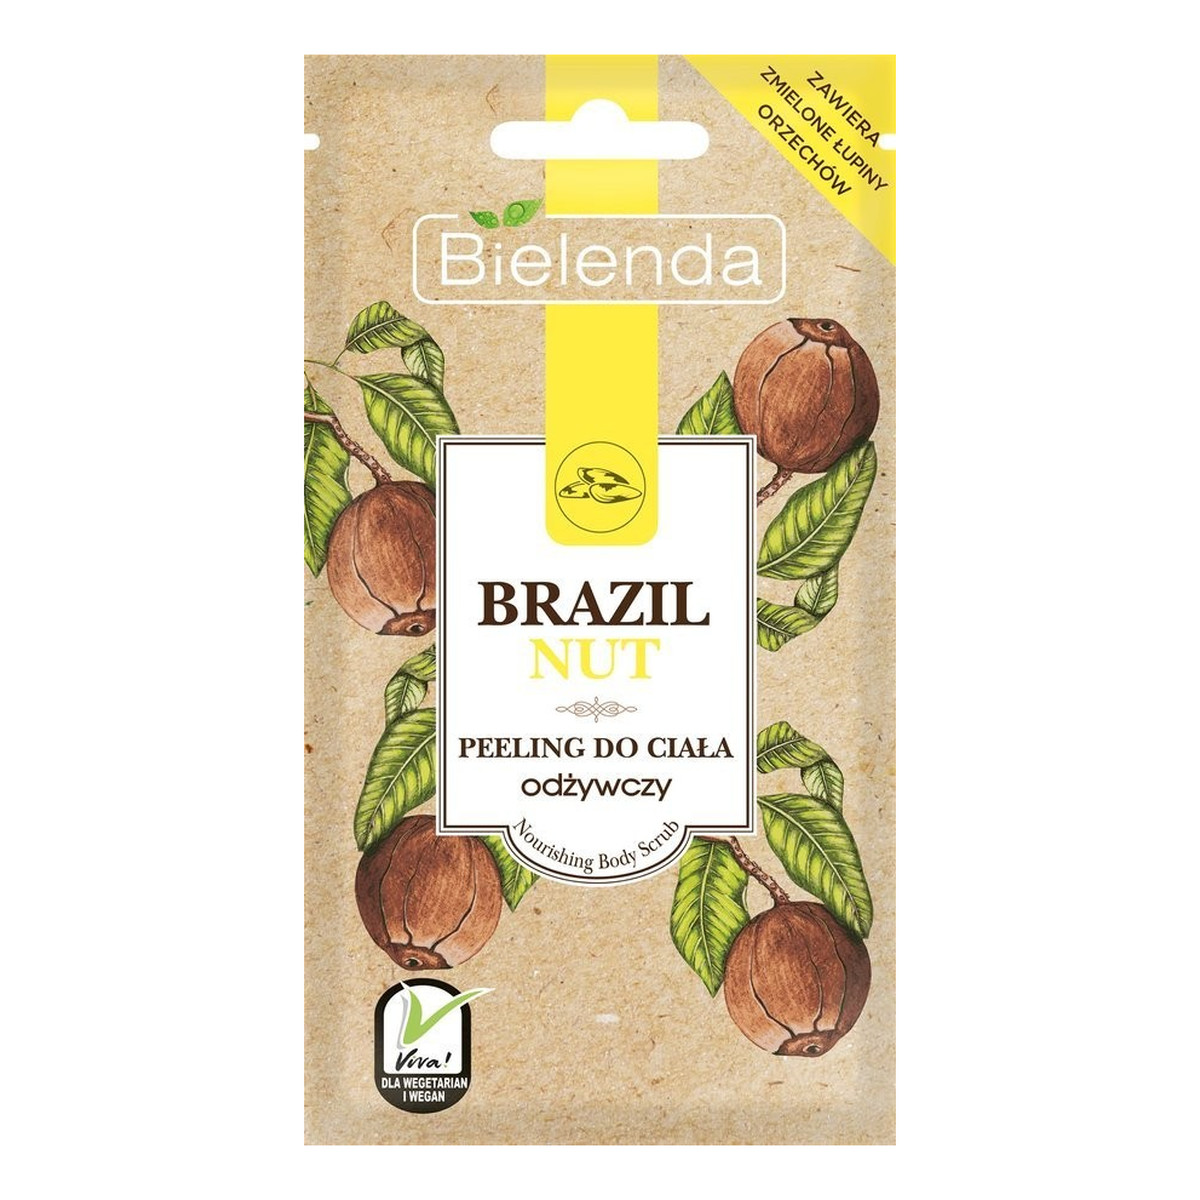 Bielenda Brazil Nut odżywczy peeling do ciała 30g